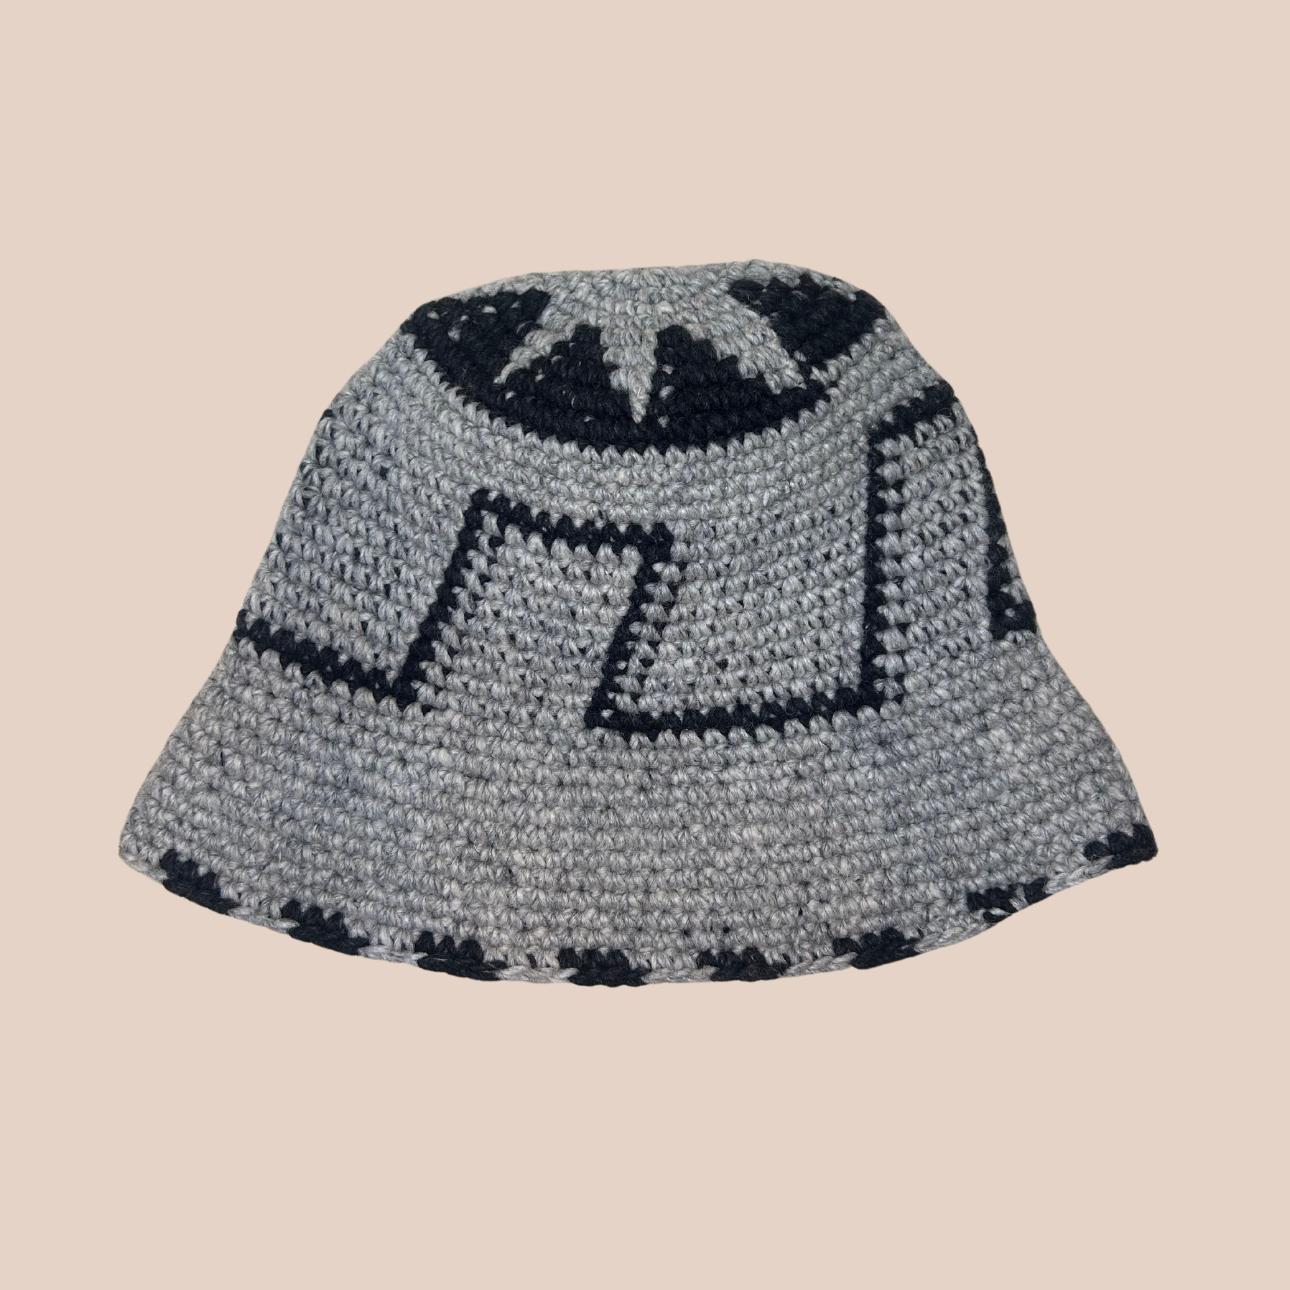 Un bucket hat crocheté en laine et acrylique, aux motifs noir et blanc